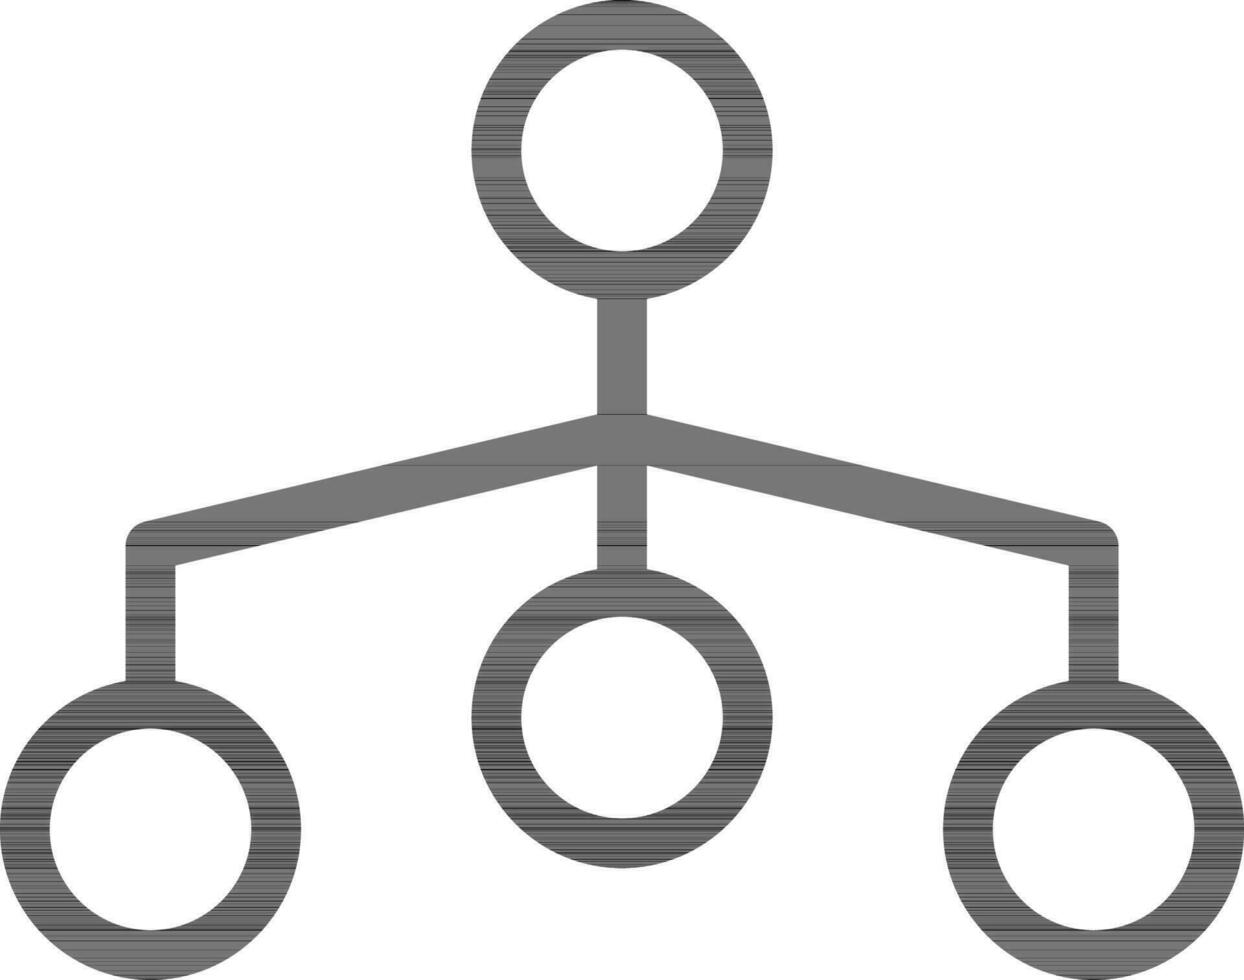 Hierarchy Icon or Symbol in Black Line Art. vector